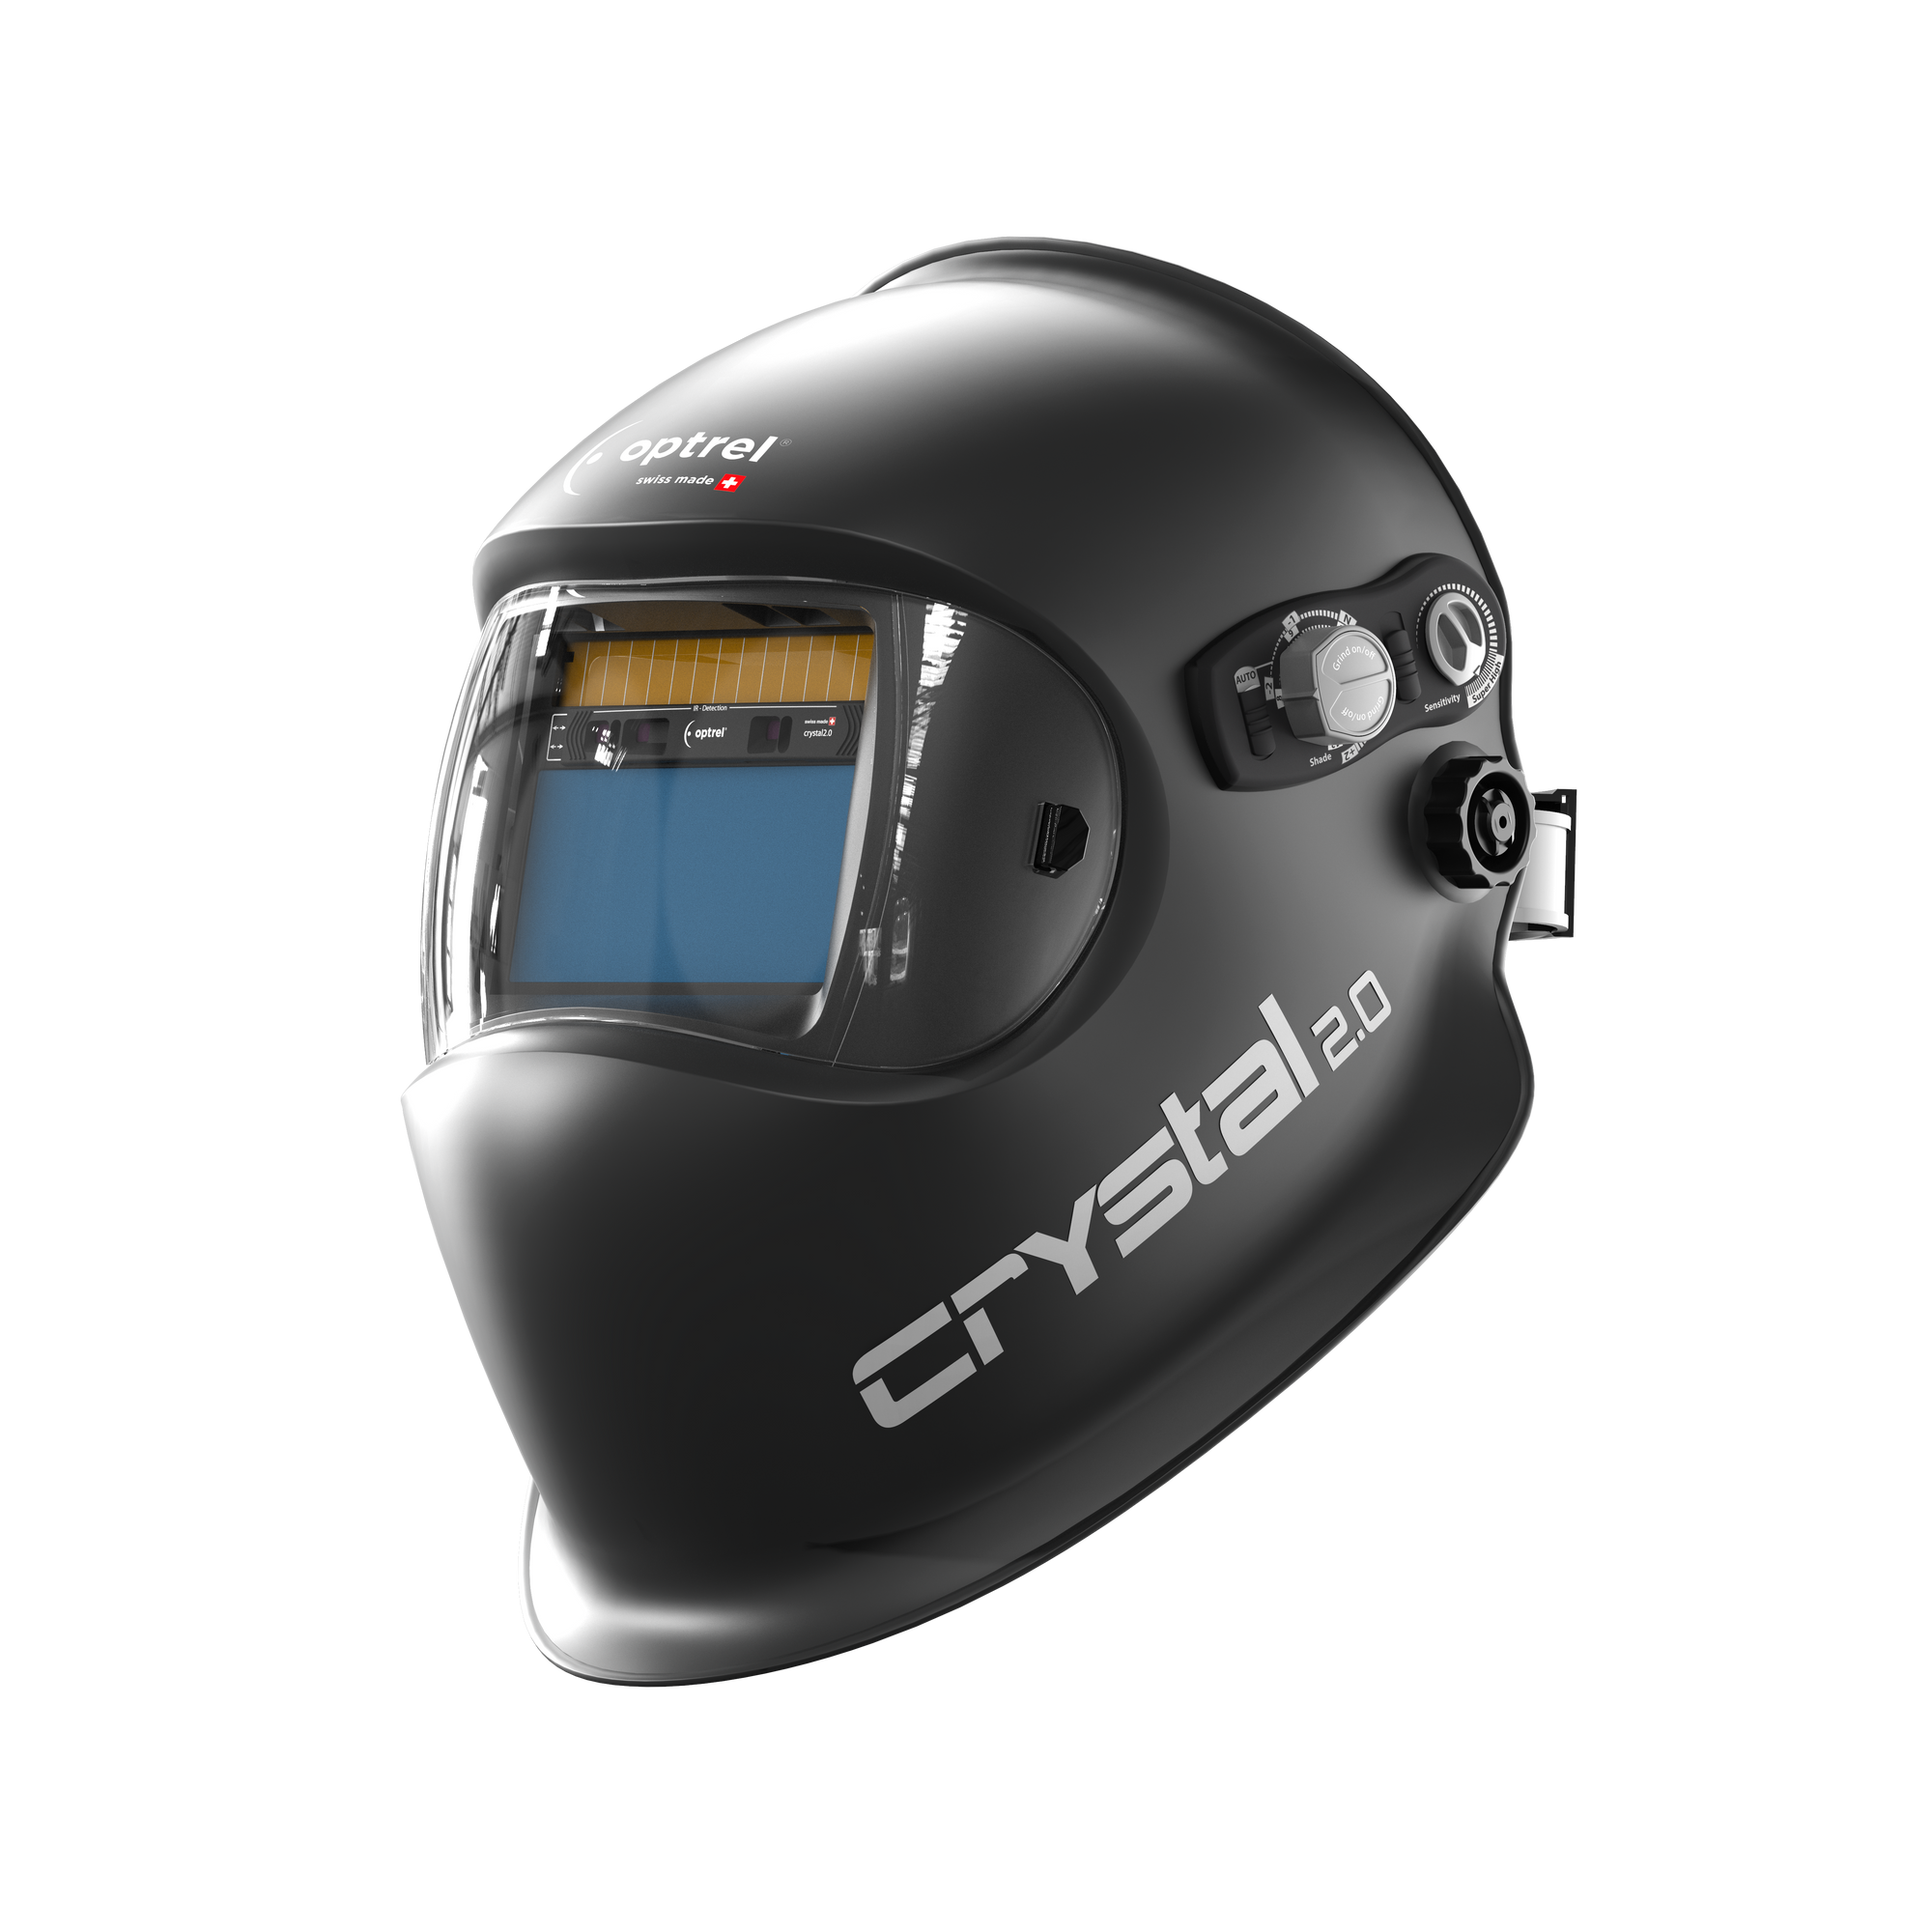 Optrel Crystal 2.0 Welding Helmet